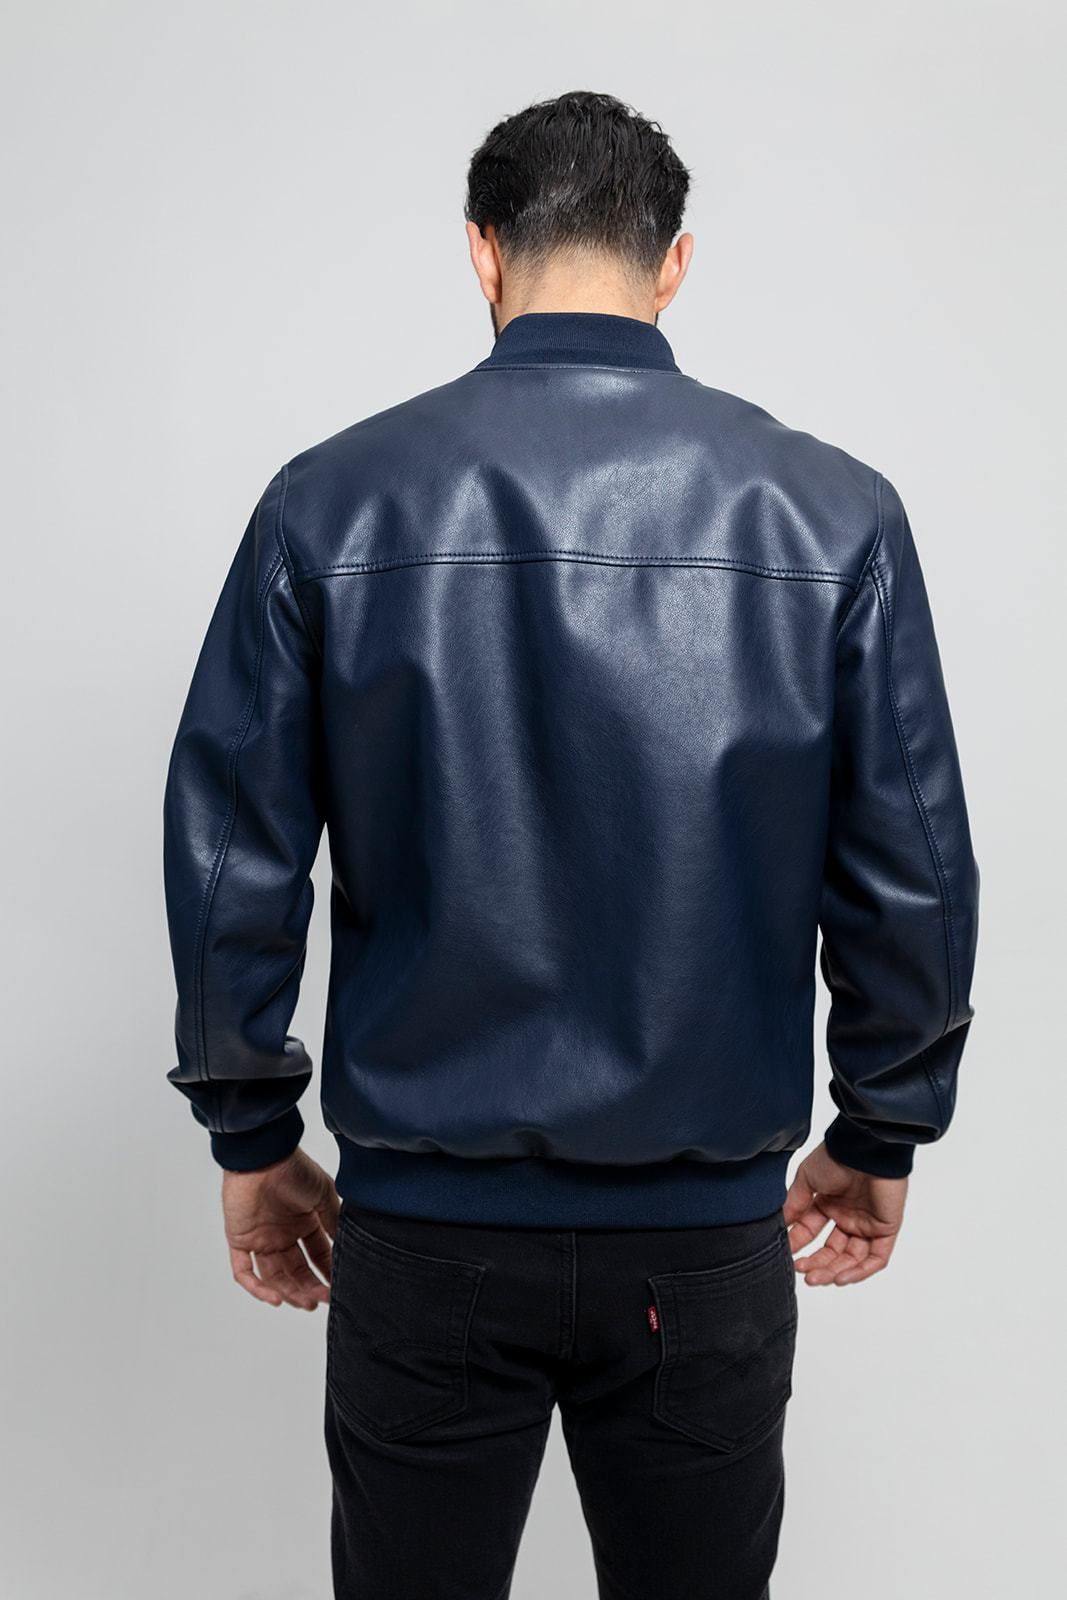 Fashion Leather Jacket NYC